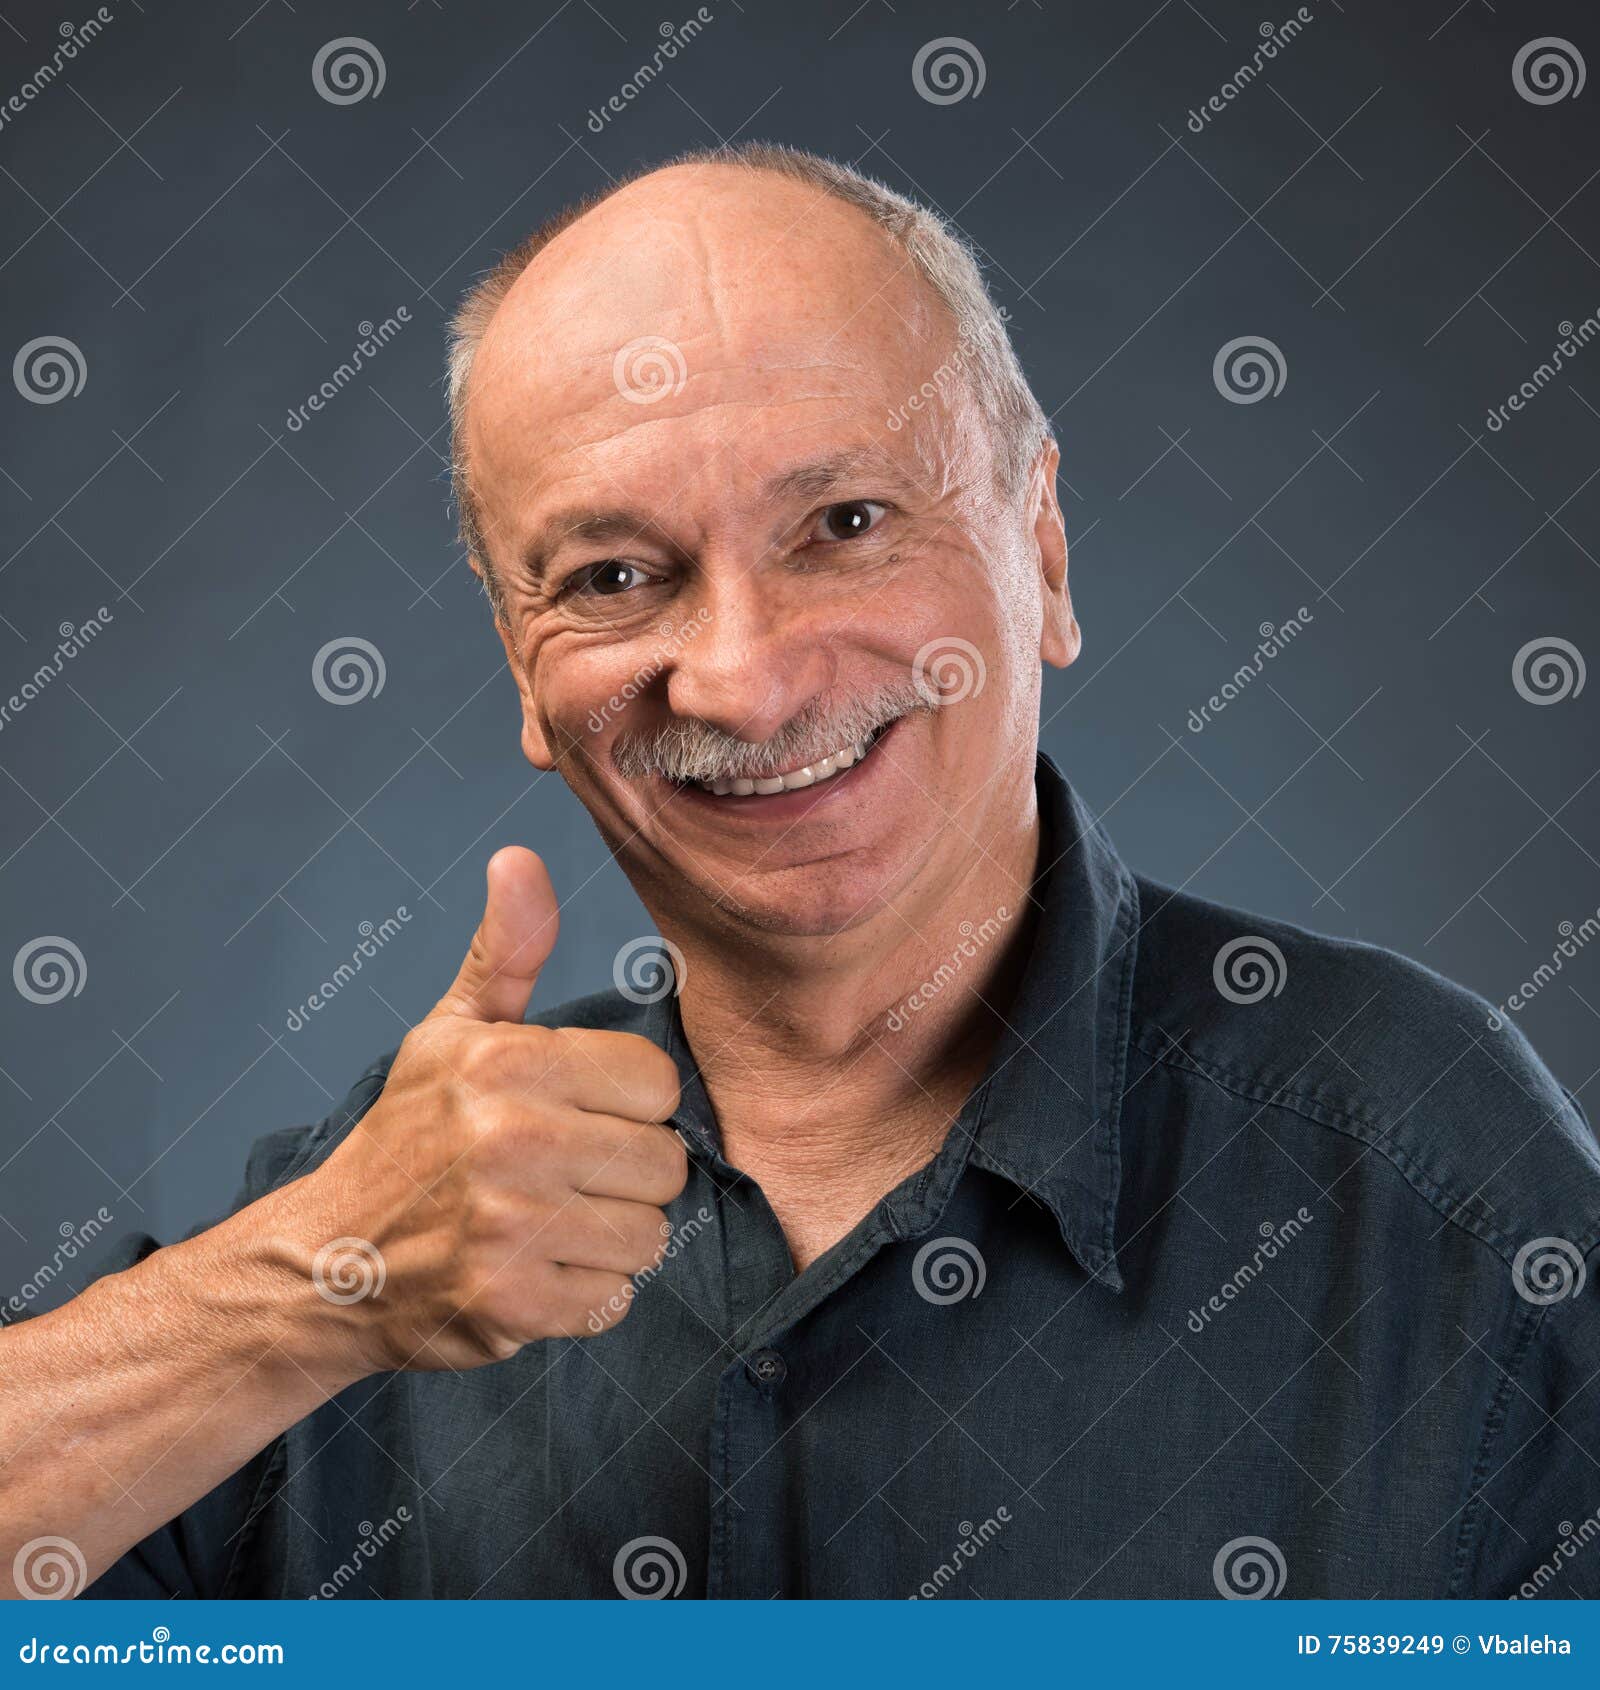 Smiling Elderly Man Stock Image Image Of Intelligence